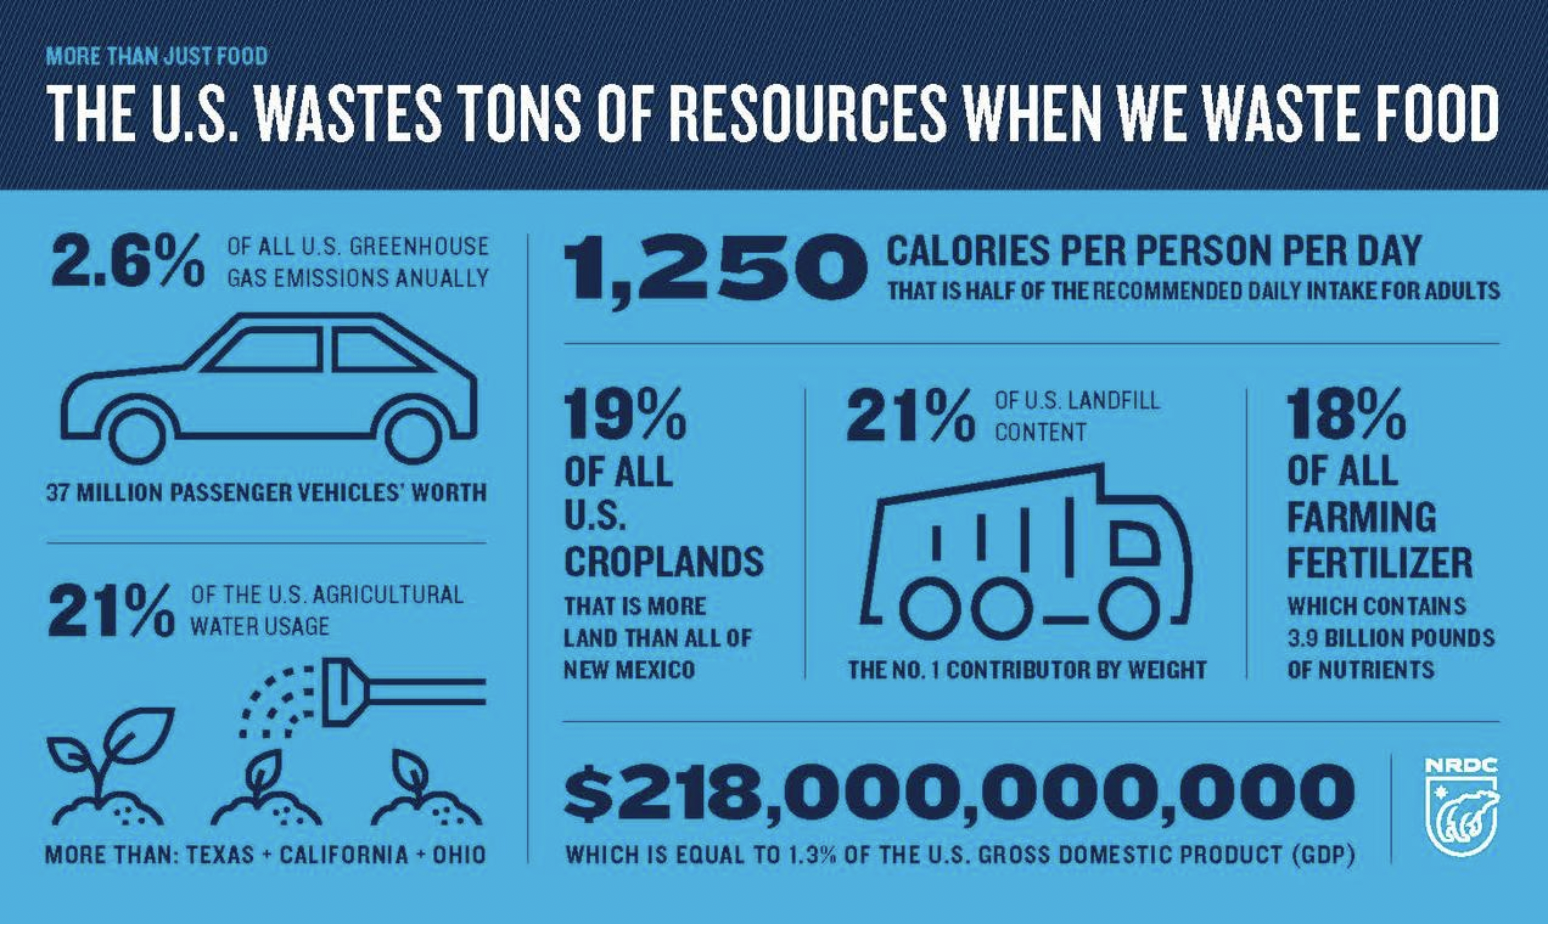 Food Waste Statistics Across the U.S.